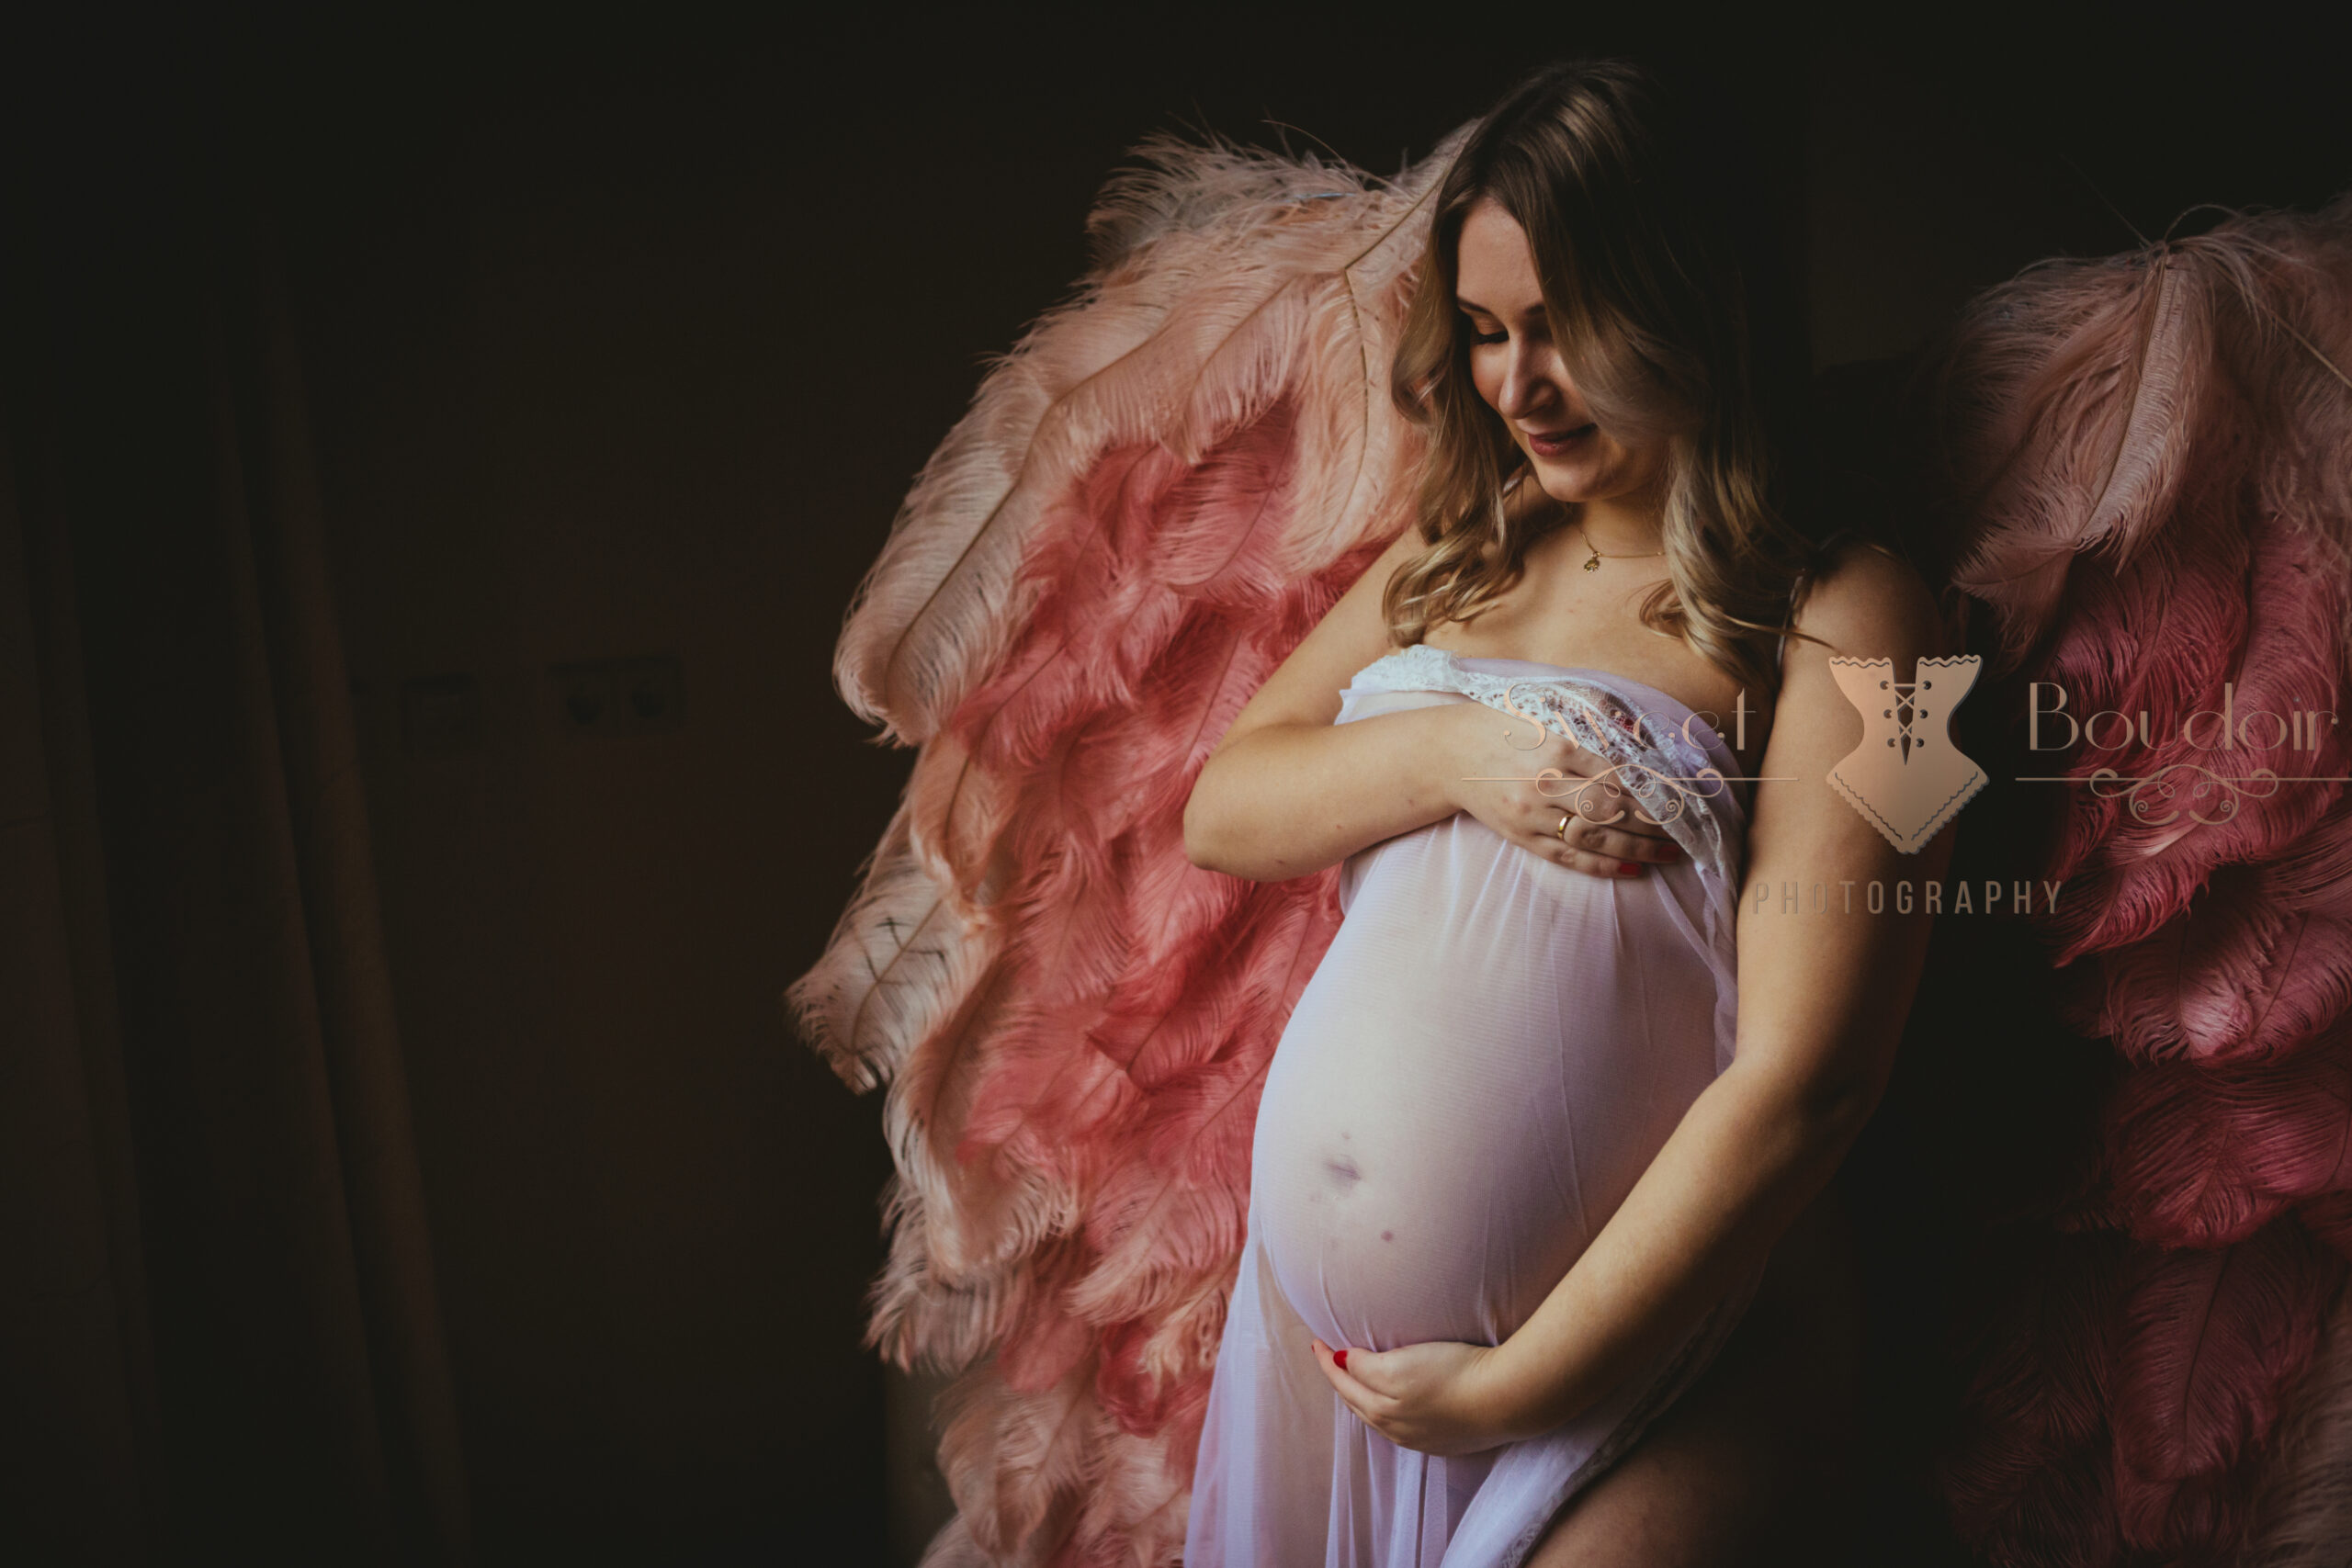 zwangerschapsreportage met engelen vleugels